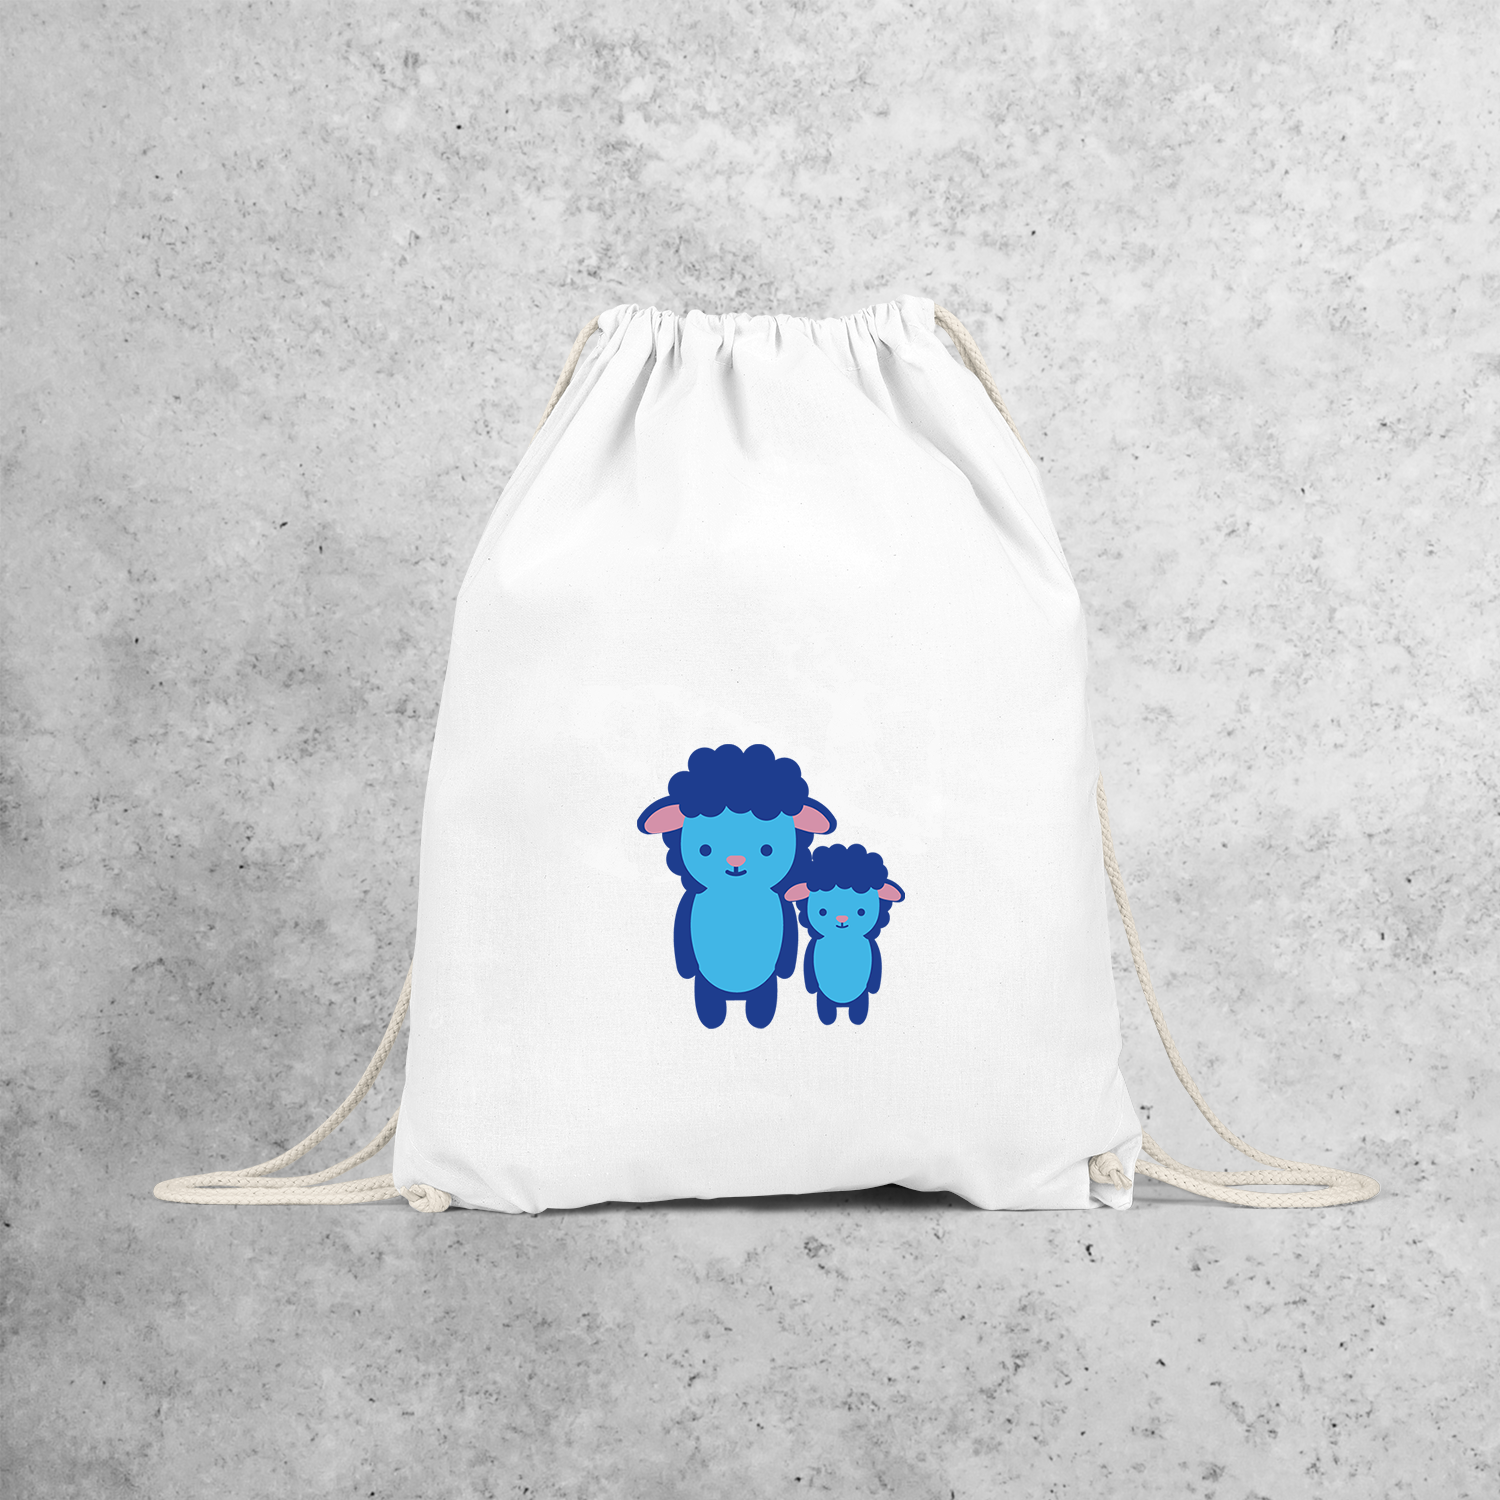 Blue sheep backpack